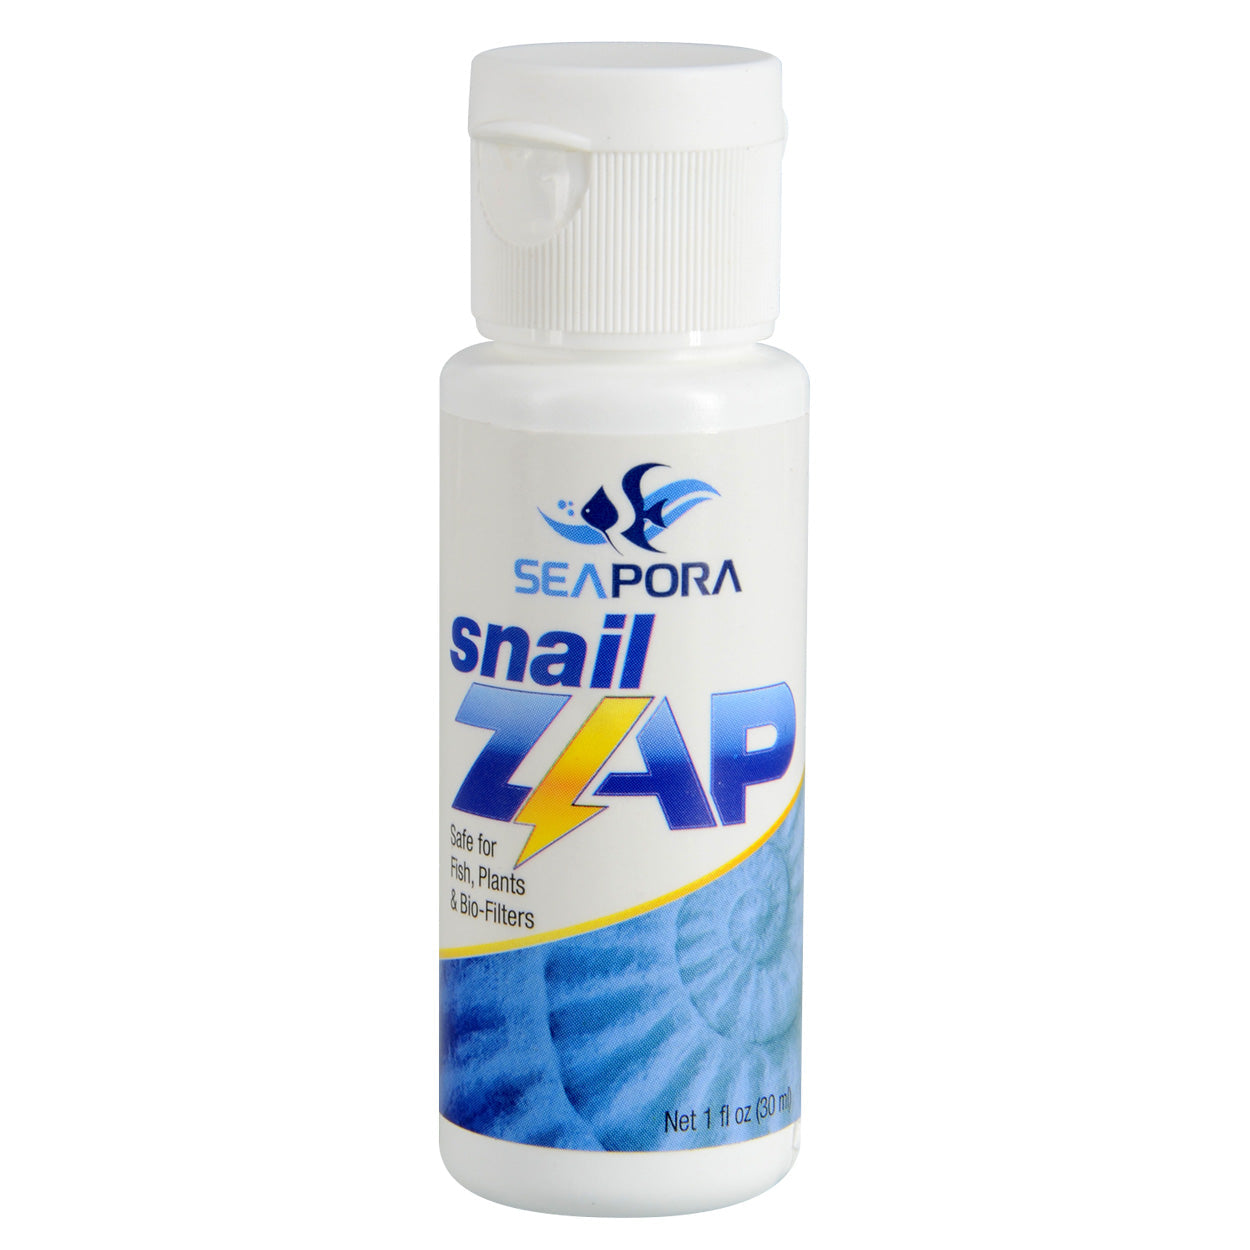 Seapora Snail Zap